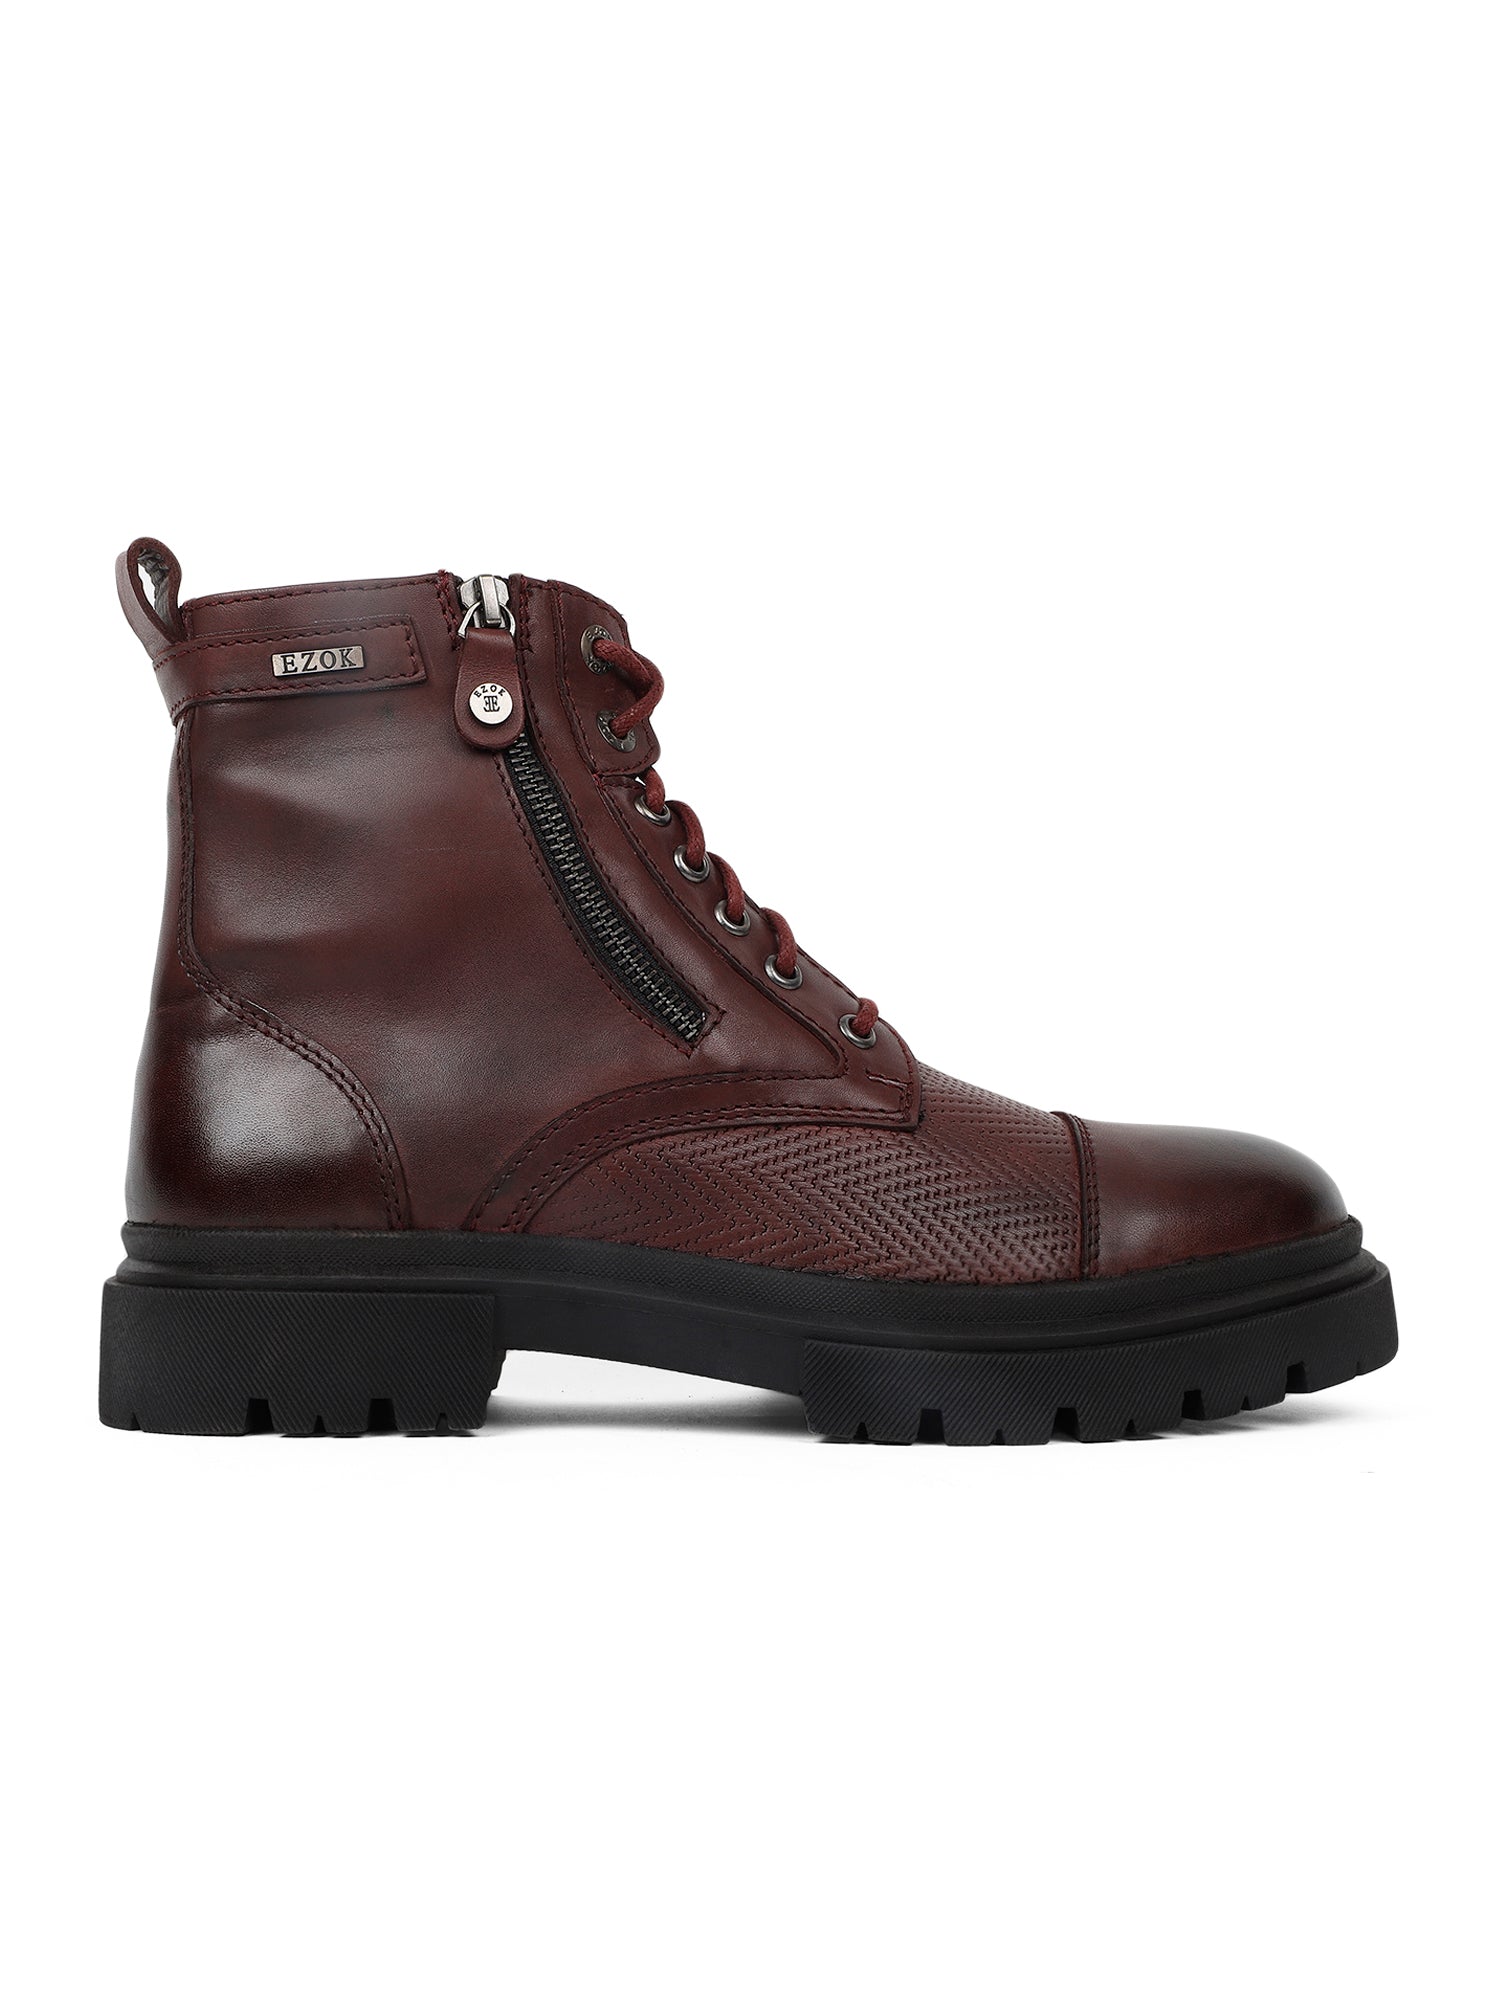 Ezok Bordo Leather Boot Shoes For Men(2501)